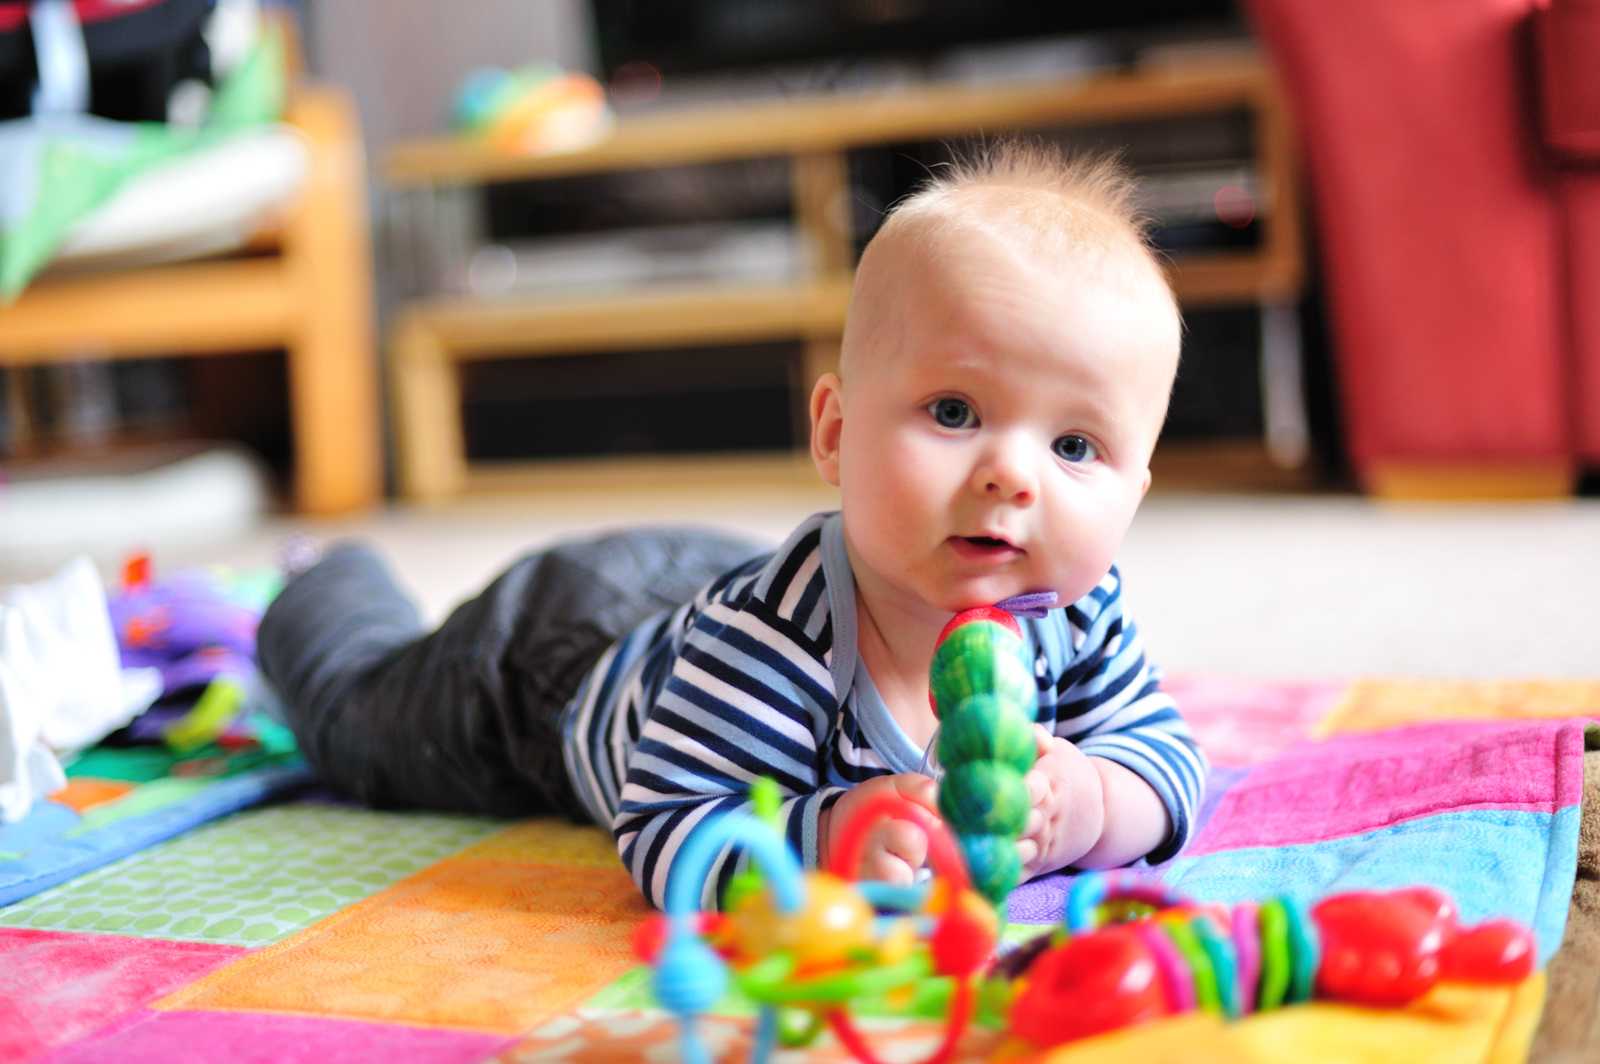 6 месяцев ребенку: что должен уметь делать, навыки малыша в полгода